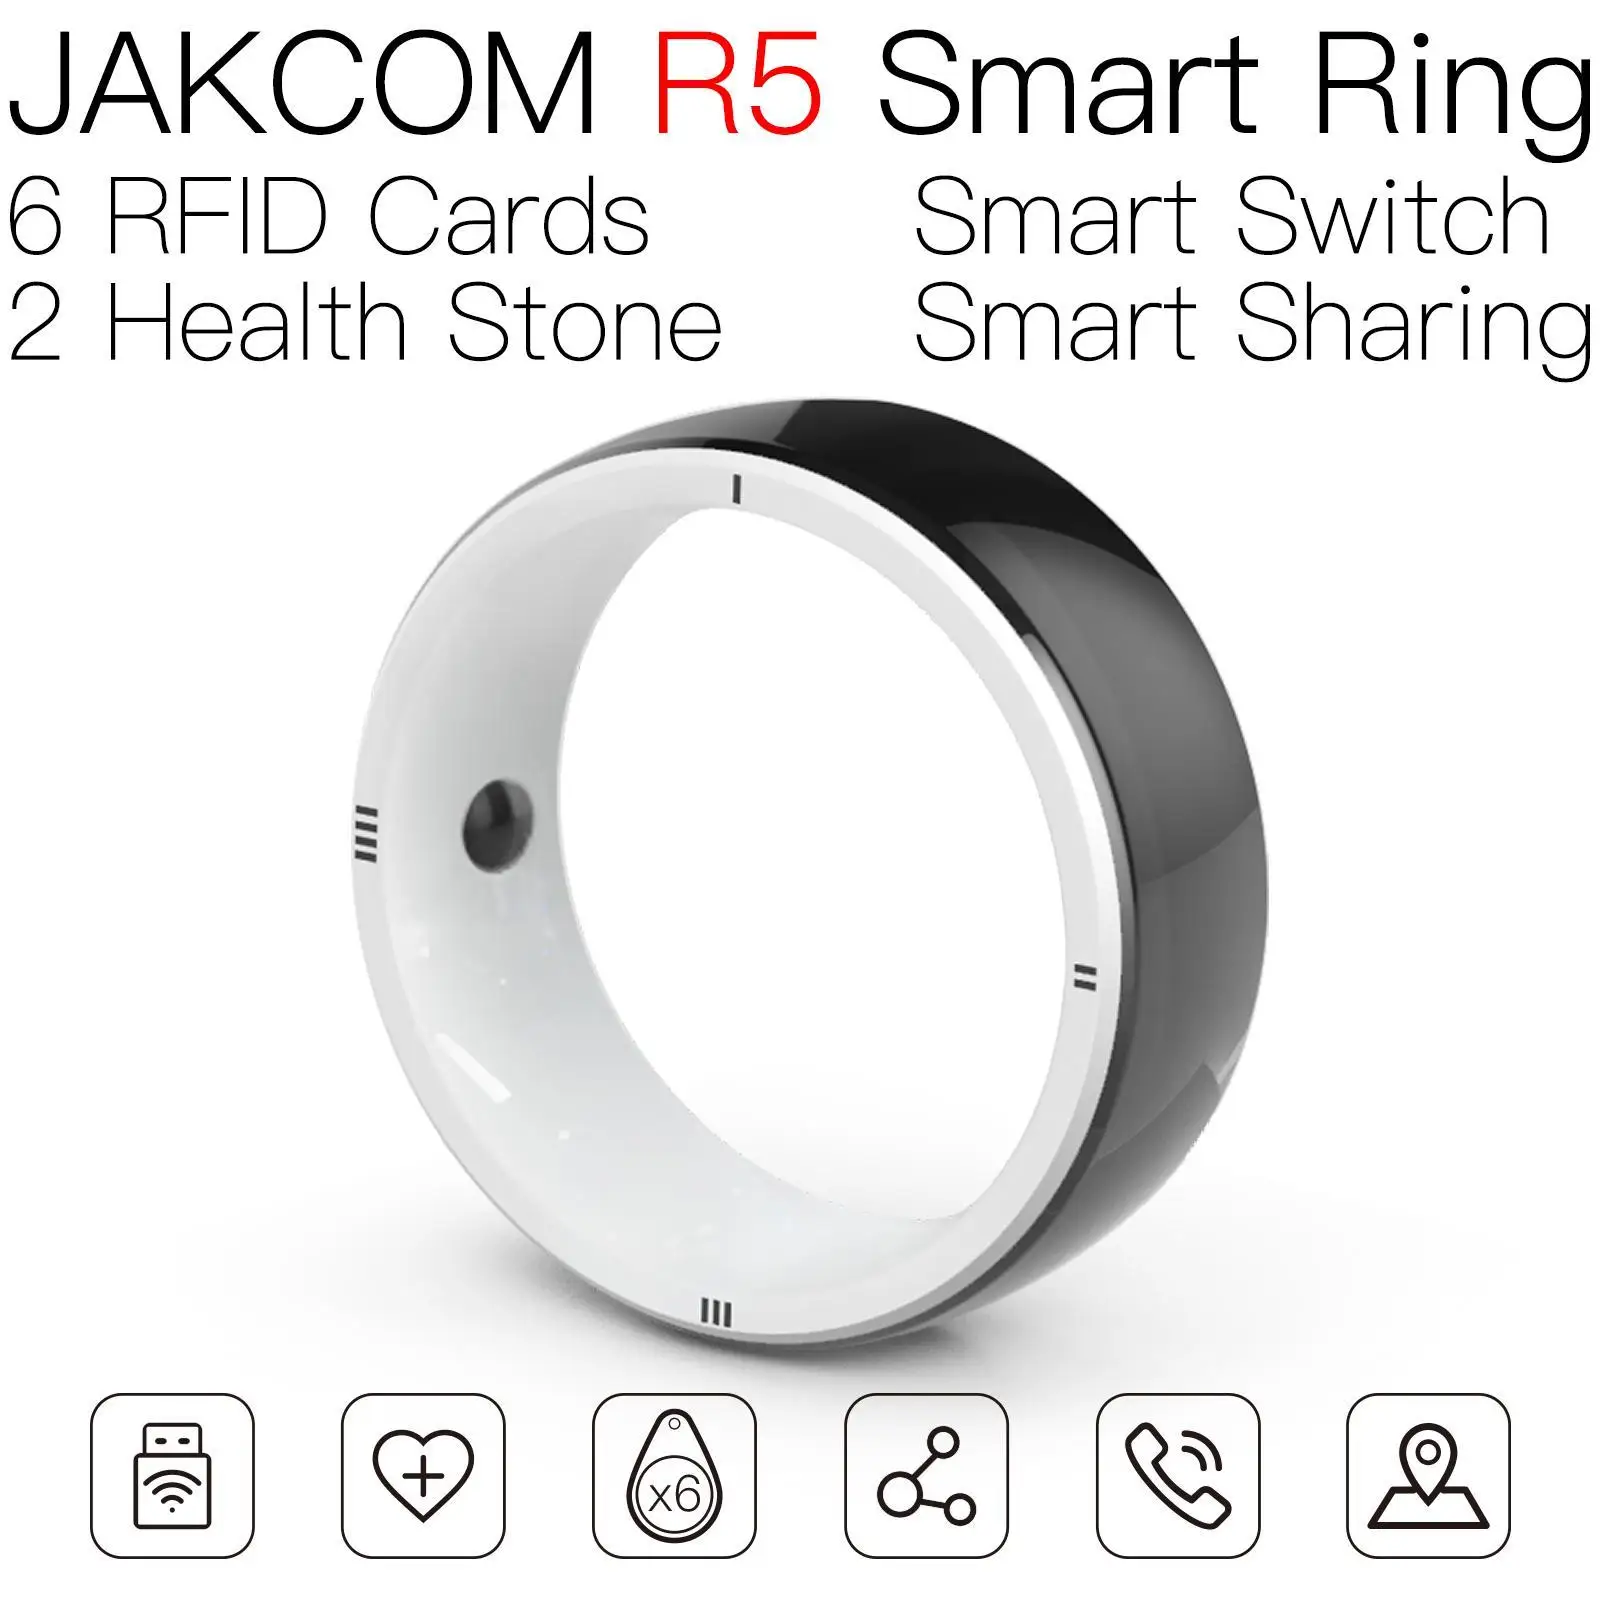 

Смарт-кольцо JAKCOM R5, супер ценность, как планшетофон 13, мышь, часы 8, мой браслет 6, оригинал, 7 планшетов